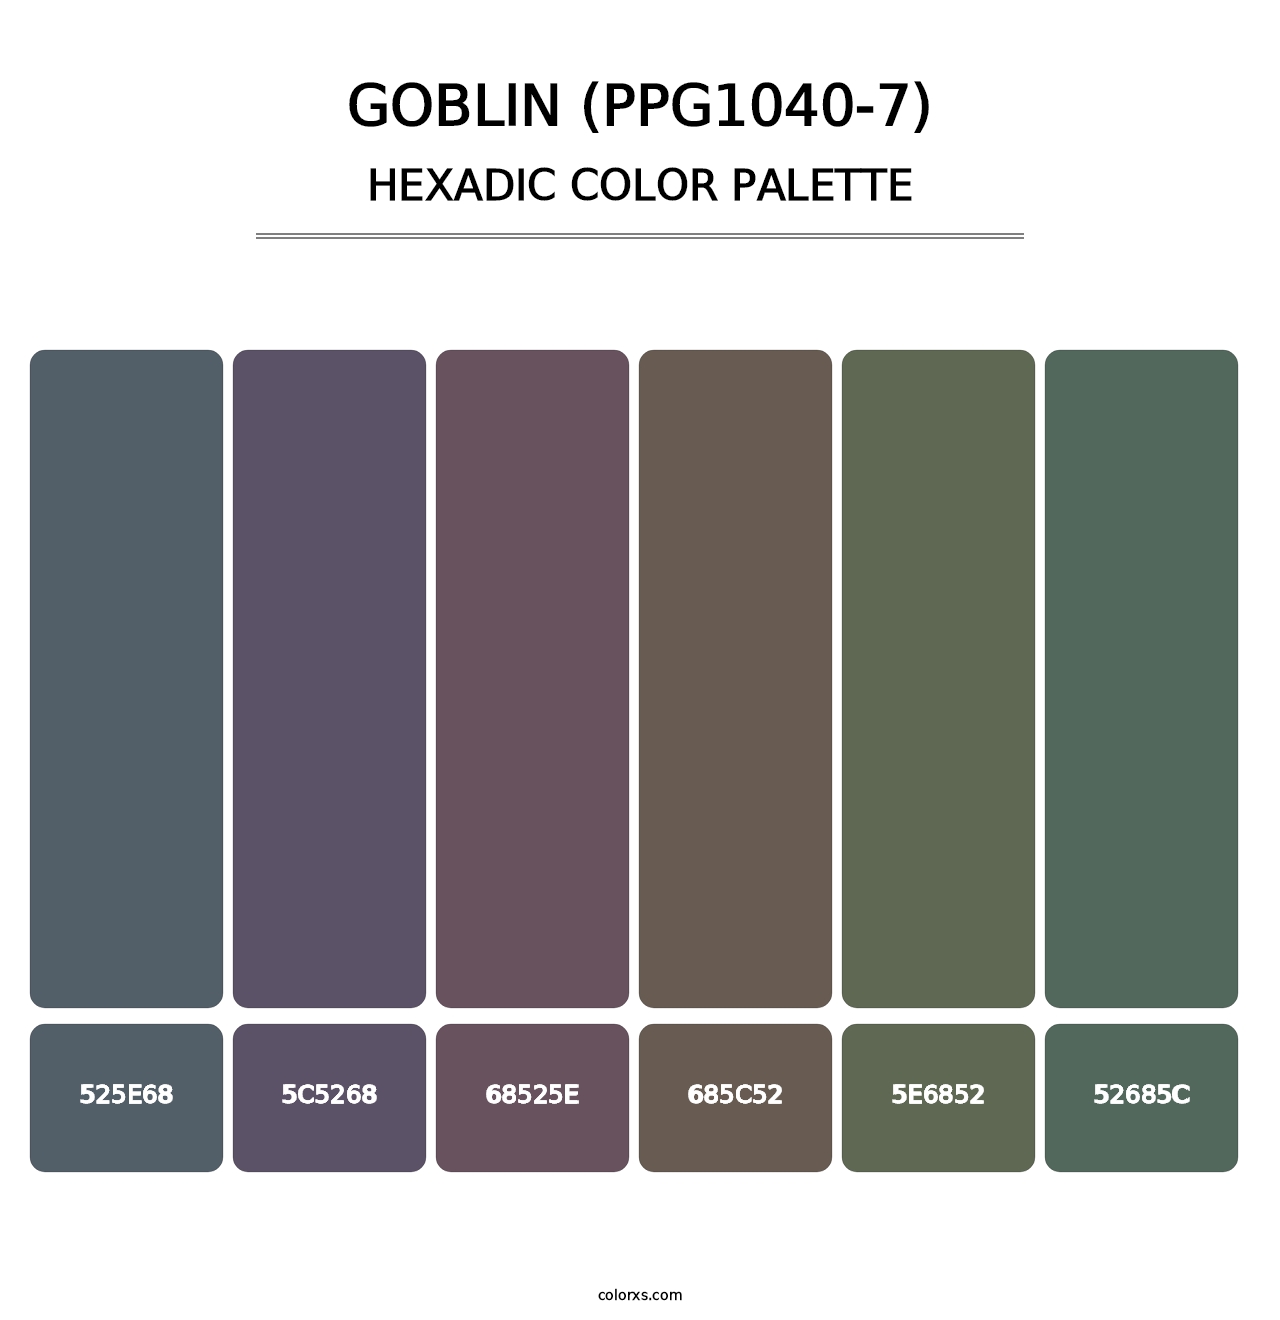 Goblin (PPG1040-7) - Hexadic Color Palette